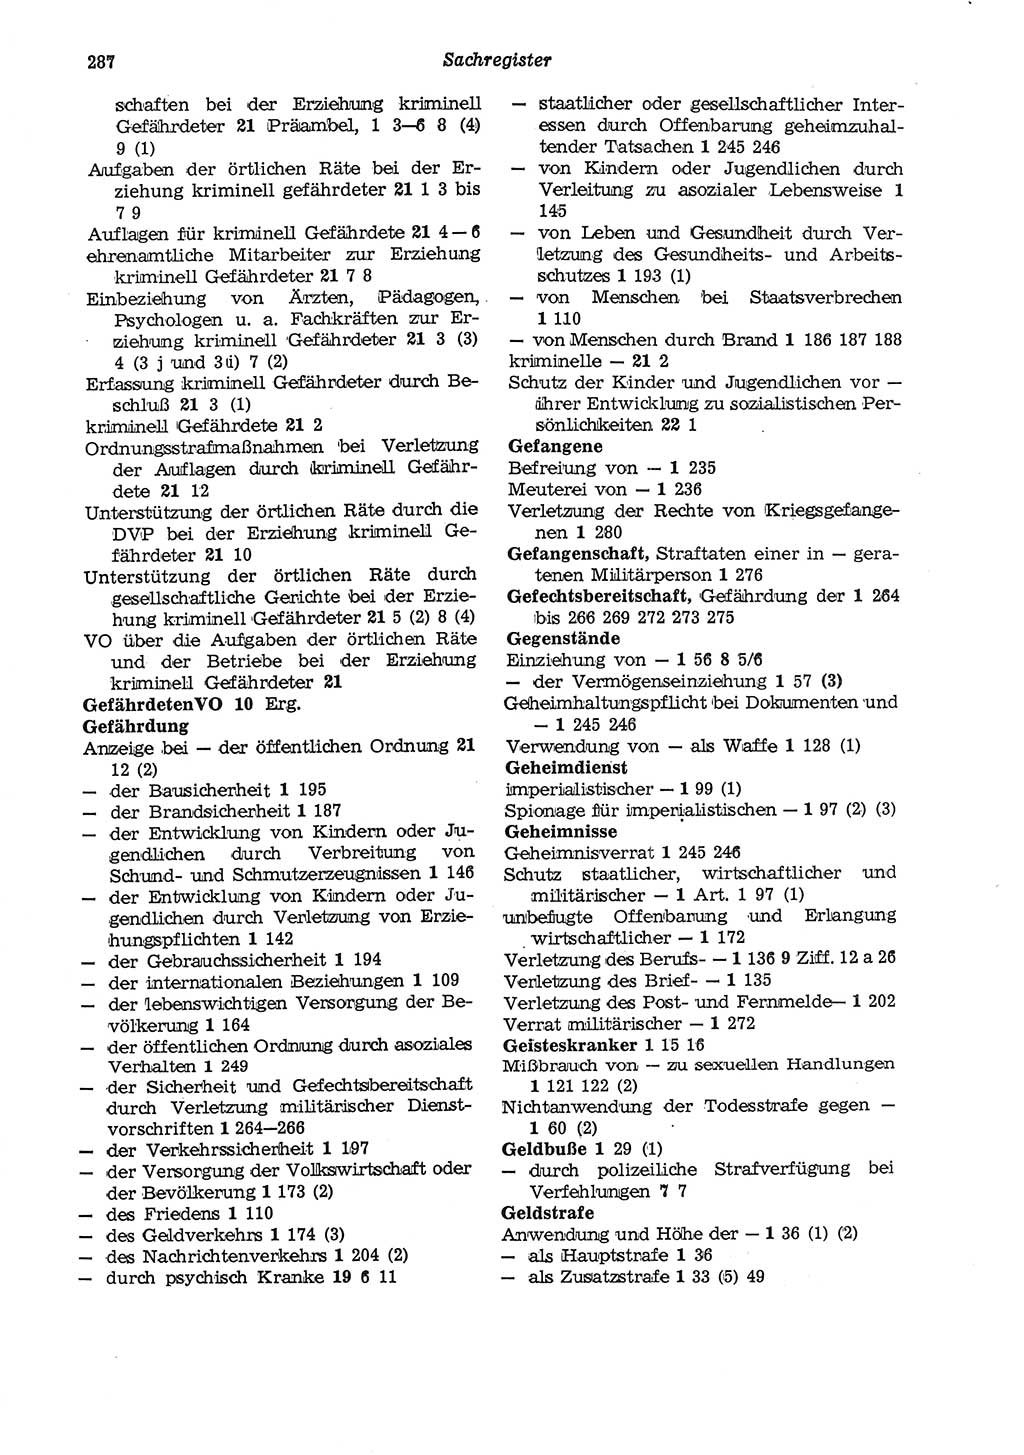 Strafgesetzbuch (StGB) der Deutschen Demokratischen Republik (DDR) und angrenzende Gesetze und Bestimmungen 1975, Seite 287 (StGB DDR Ges. Best. 1975, S. 287)